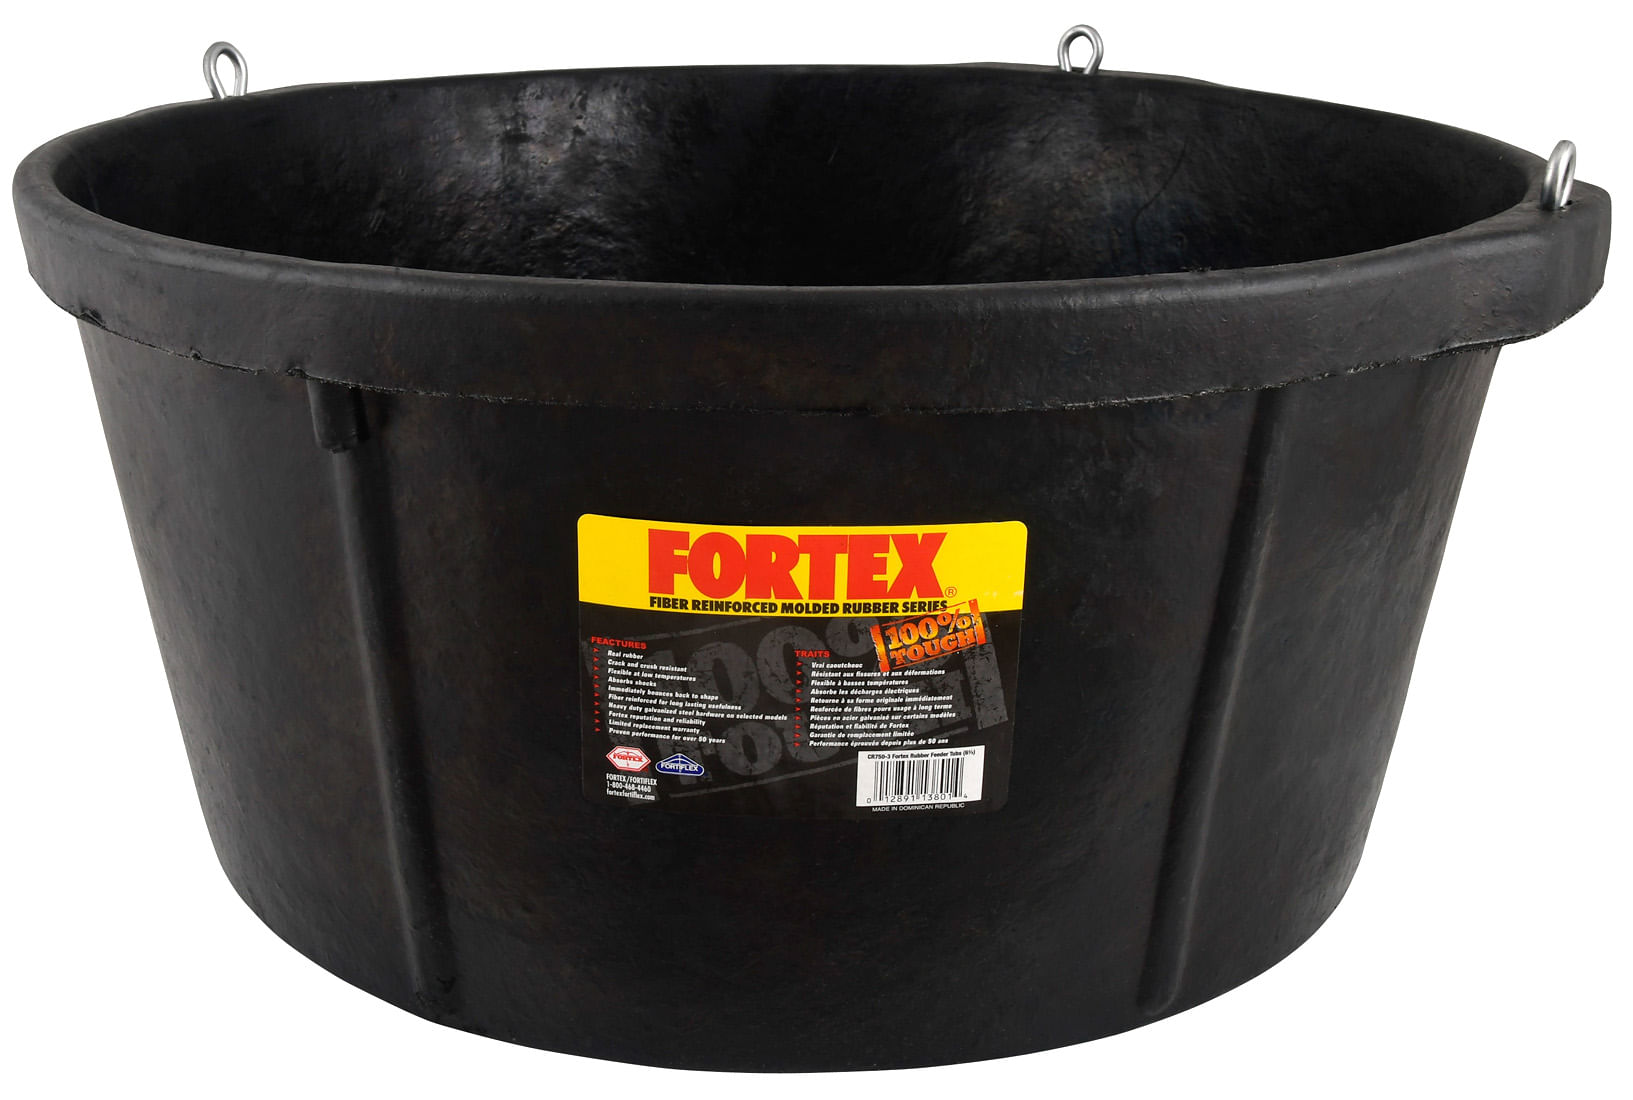 Fortiflex Flatback Bucket, 5 Gallon - Jeffers